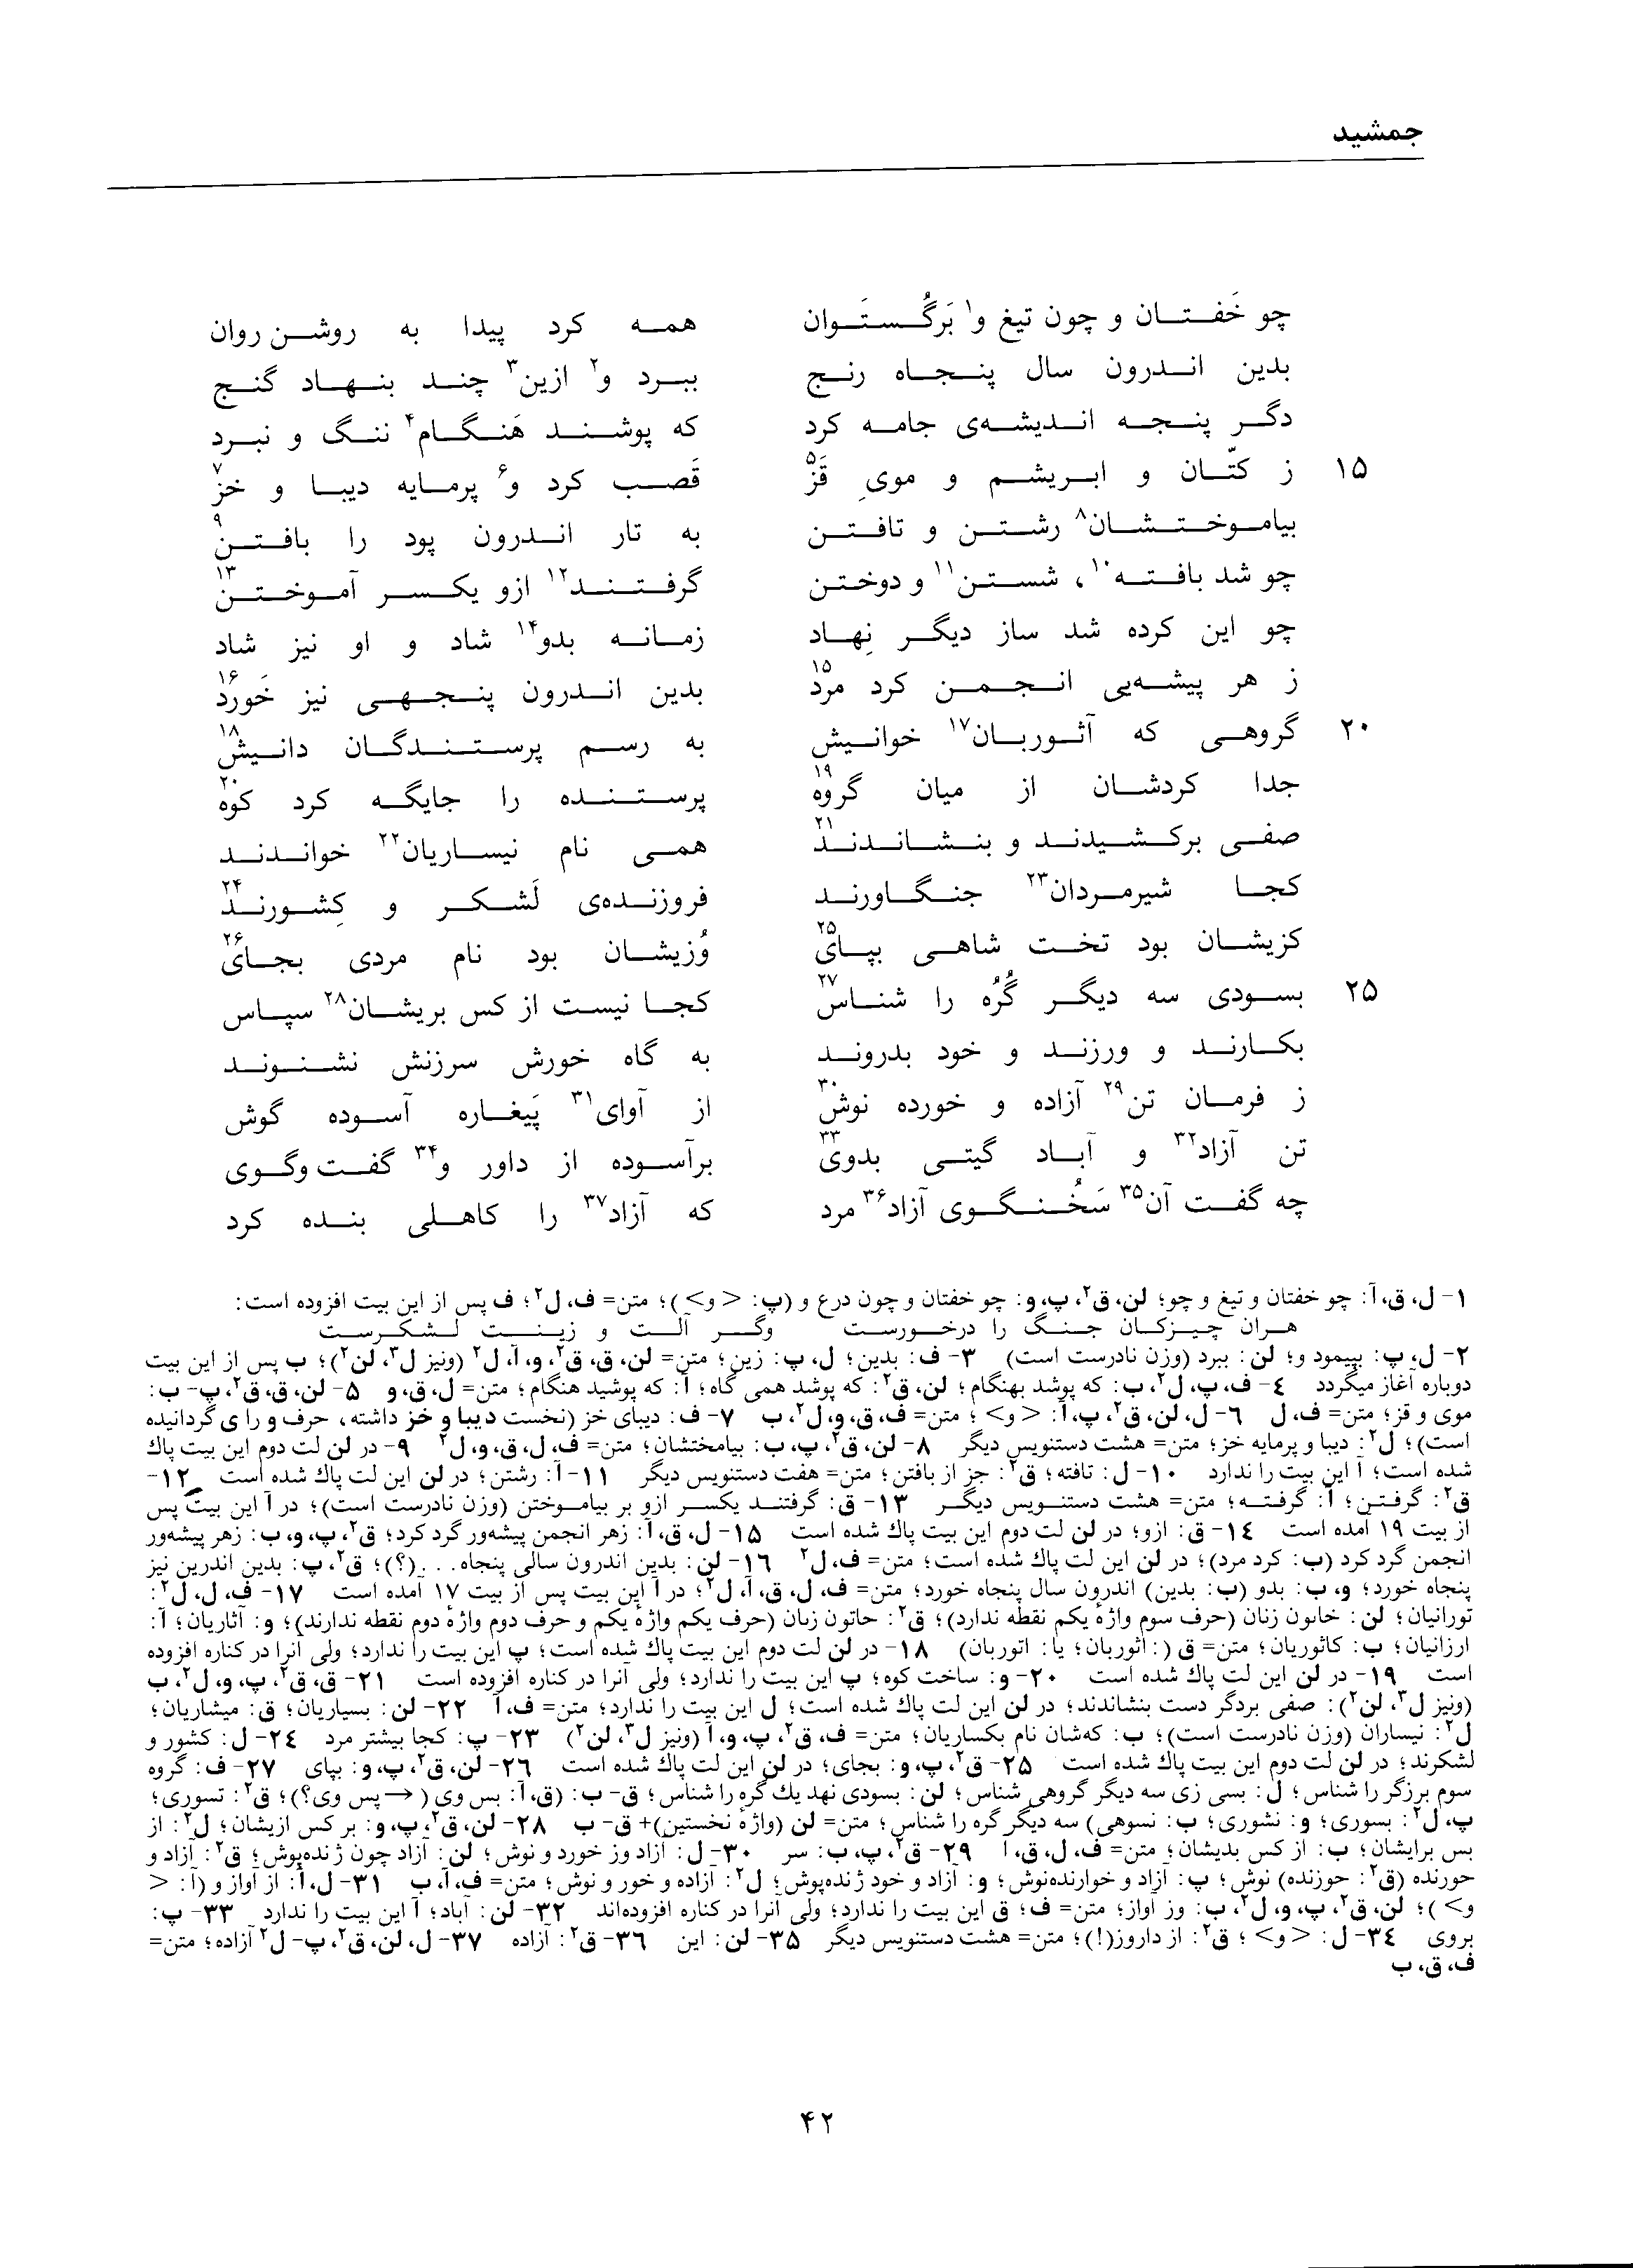 vol. 1, p. 42